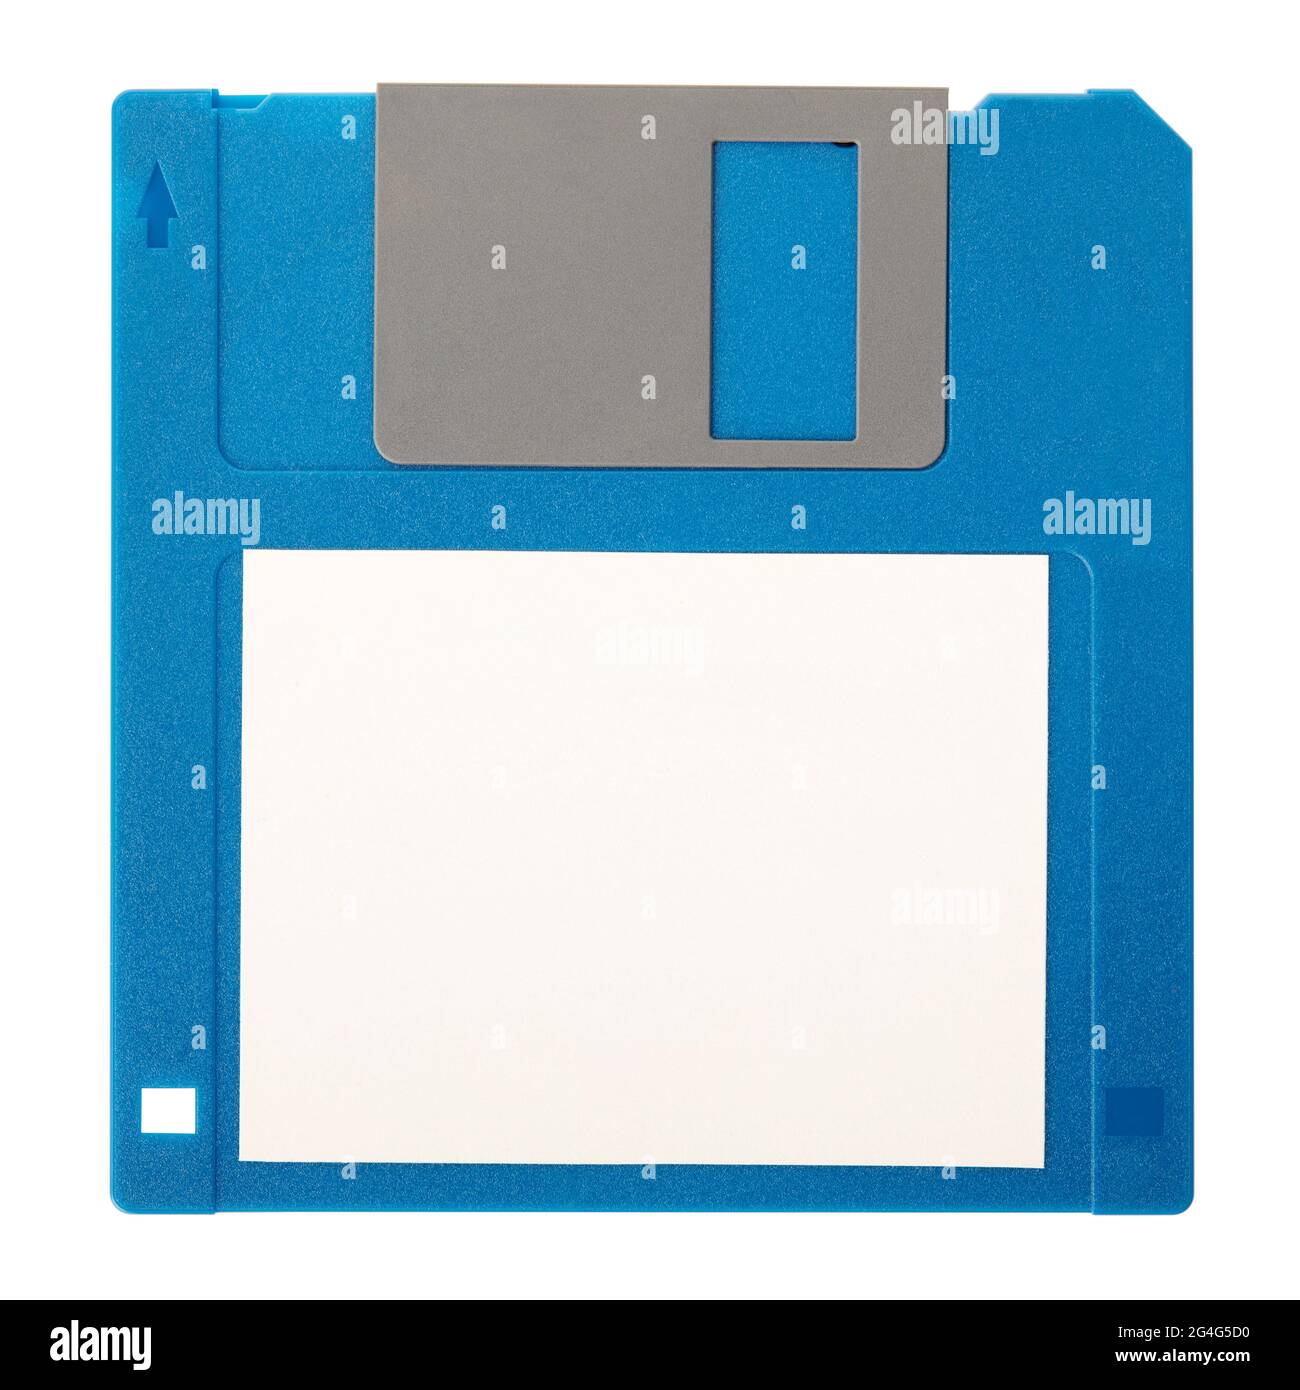 Floppy disk blu con etichetta vuota isolata su sfondo bianco, percorso di ritaglio Foto Stock